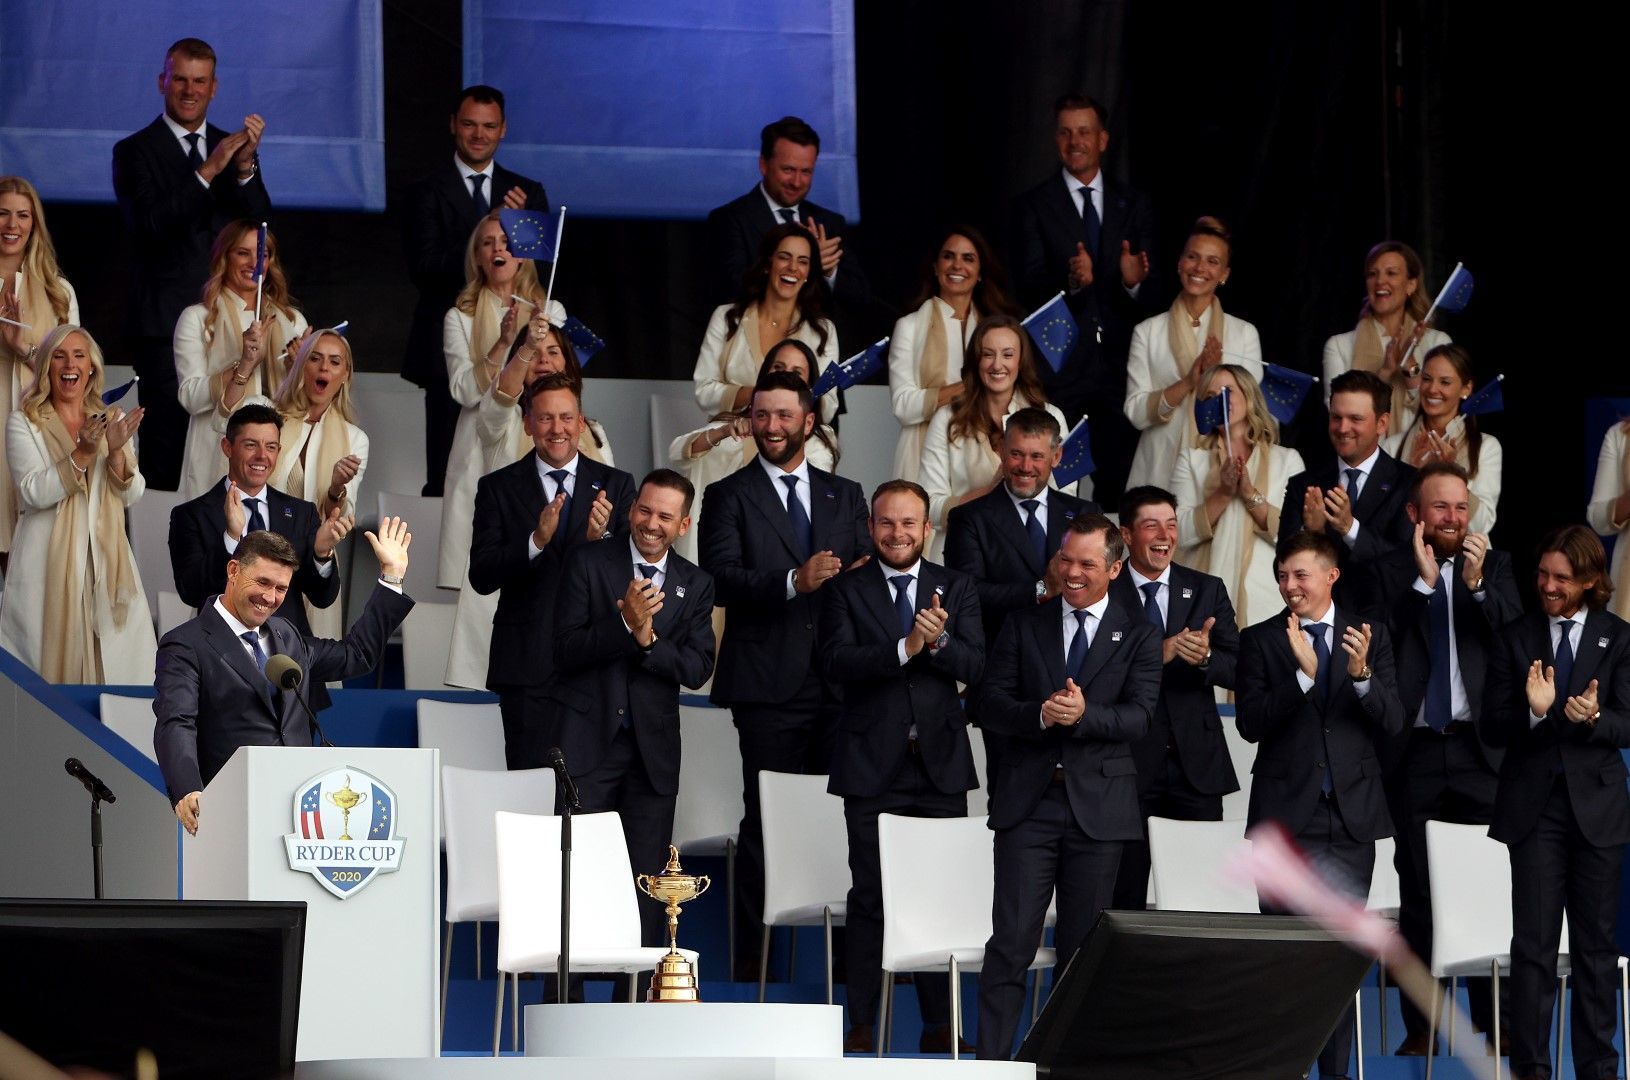 Отборът на Eвропа по време на церемонията по откриването на Ryder Cup